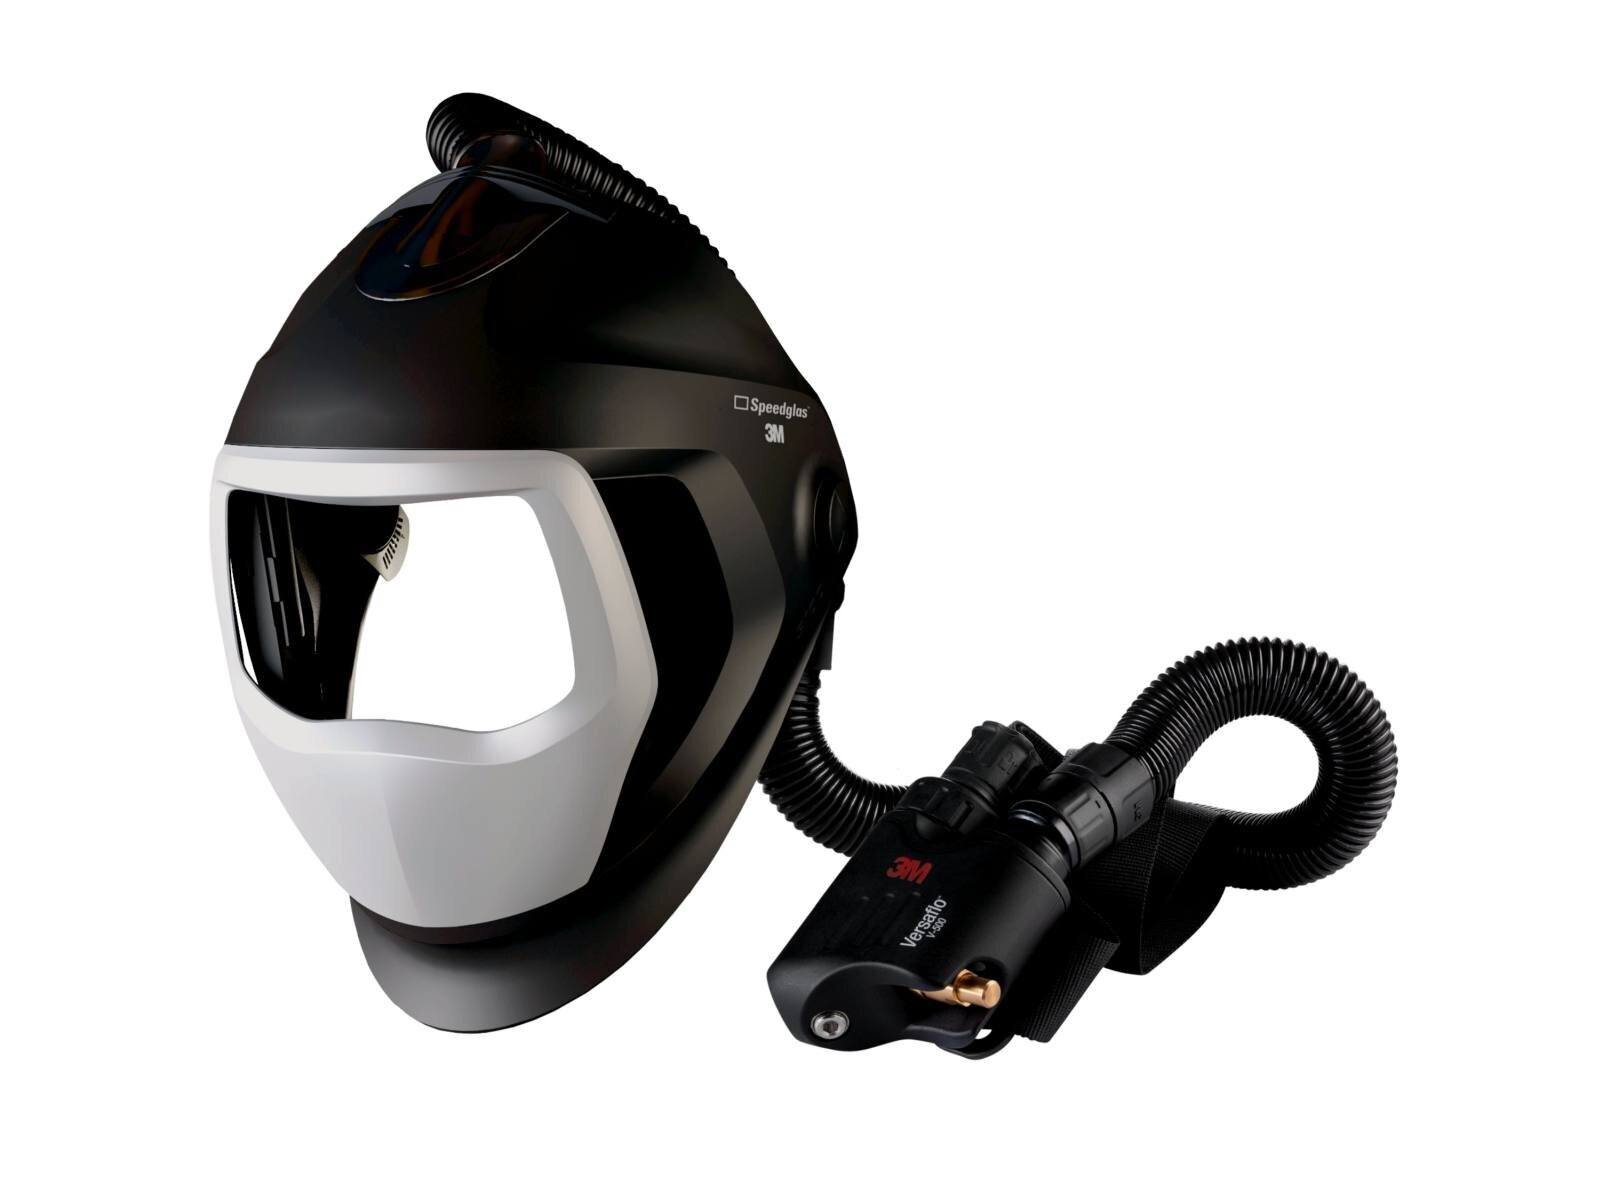 Masque de soudure 3M Speedglas 9100 Air sans ADF, avec protection respiratoire à air comprimé Versaflo V-500E, tuyau à air QRS, adaptateur 5333506, débitmètre d'air y compris sac de rangement #568500